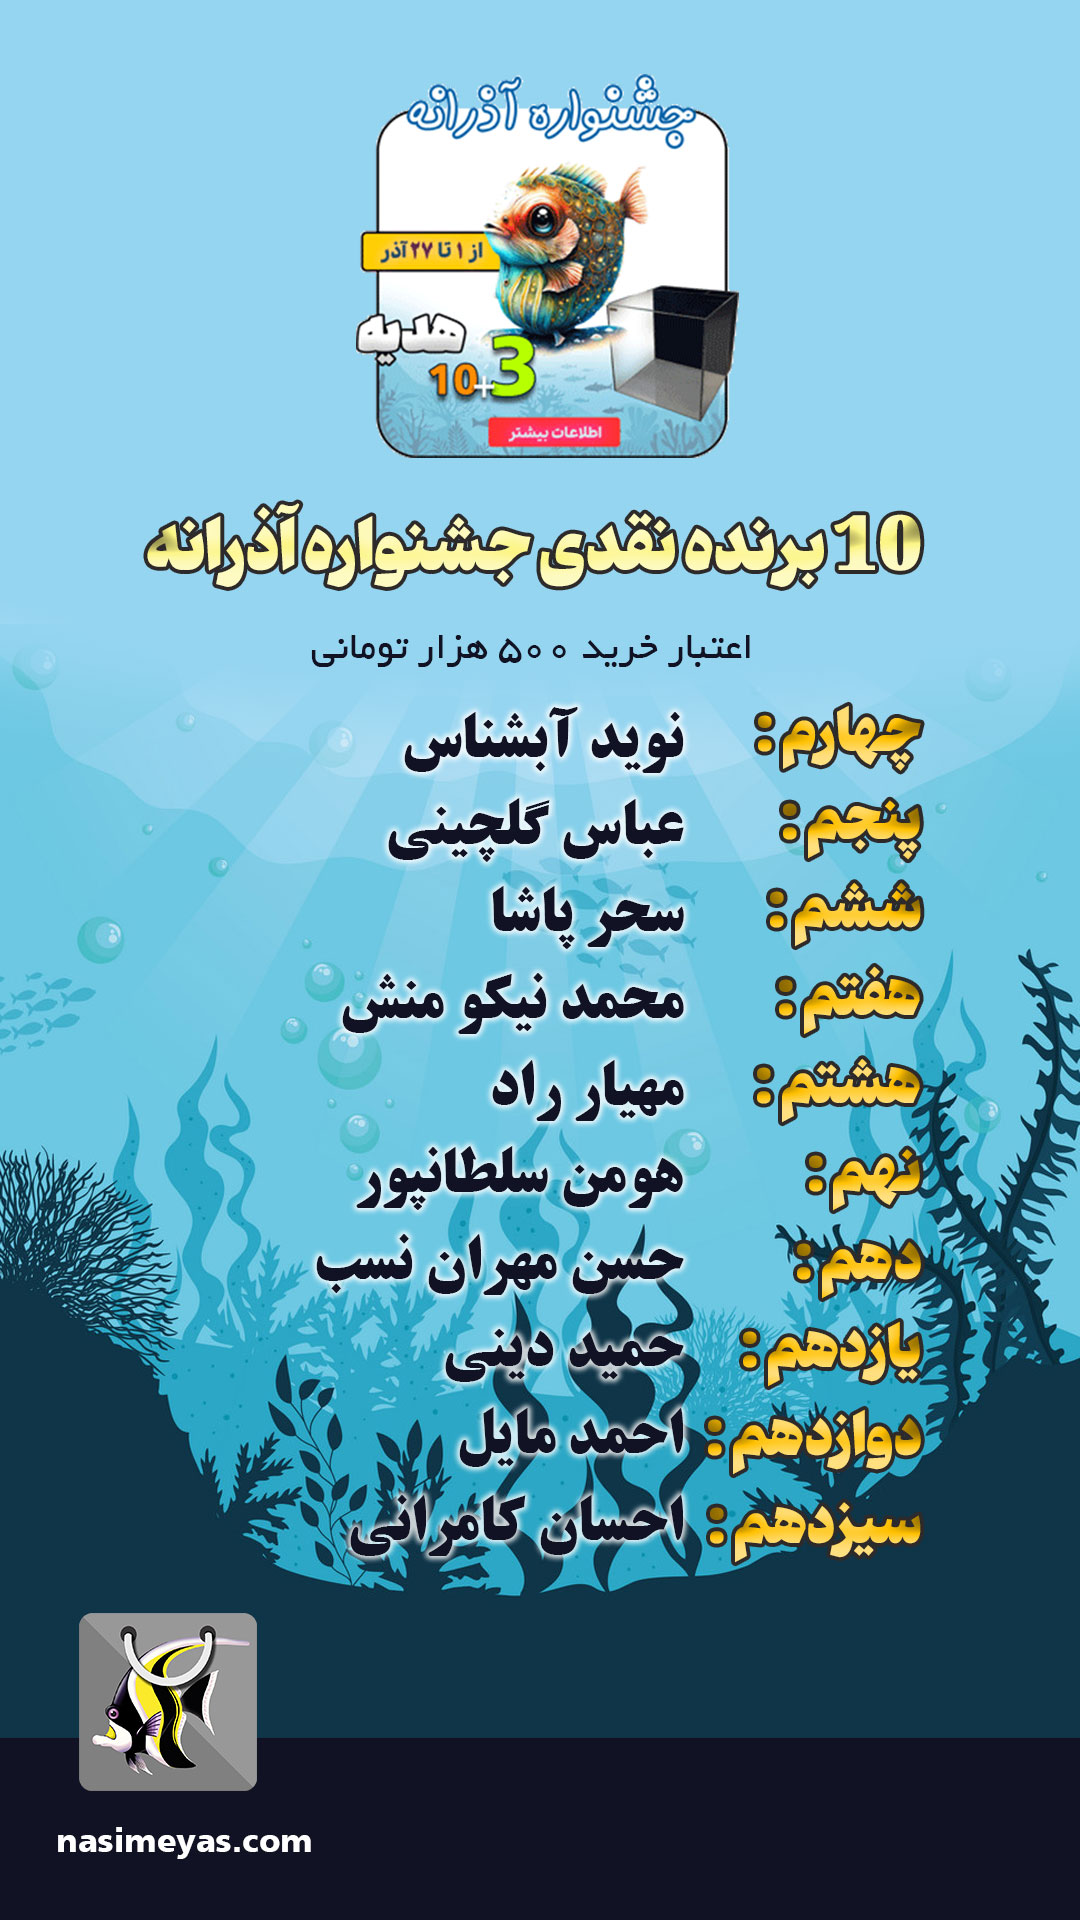 اسامی برندگان جشنواره آذرانه 1402 نسیم یاس